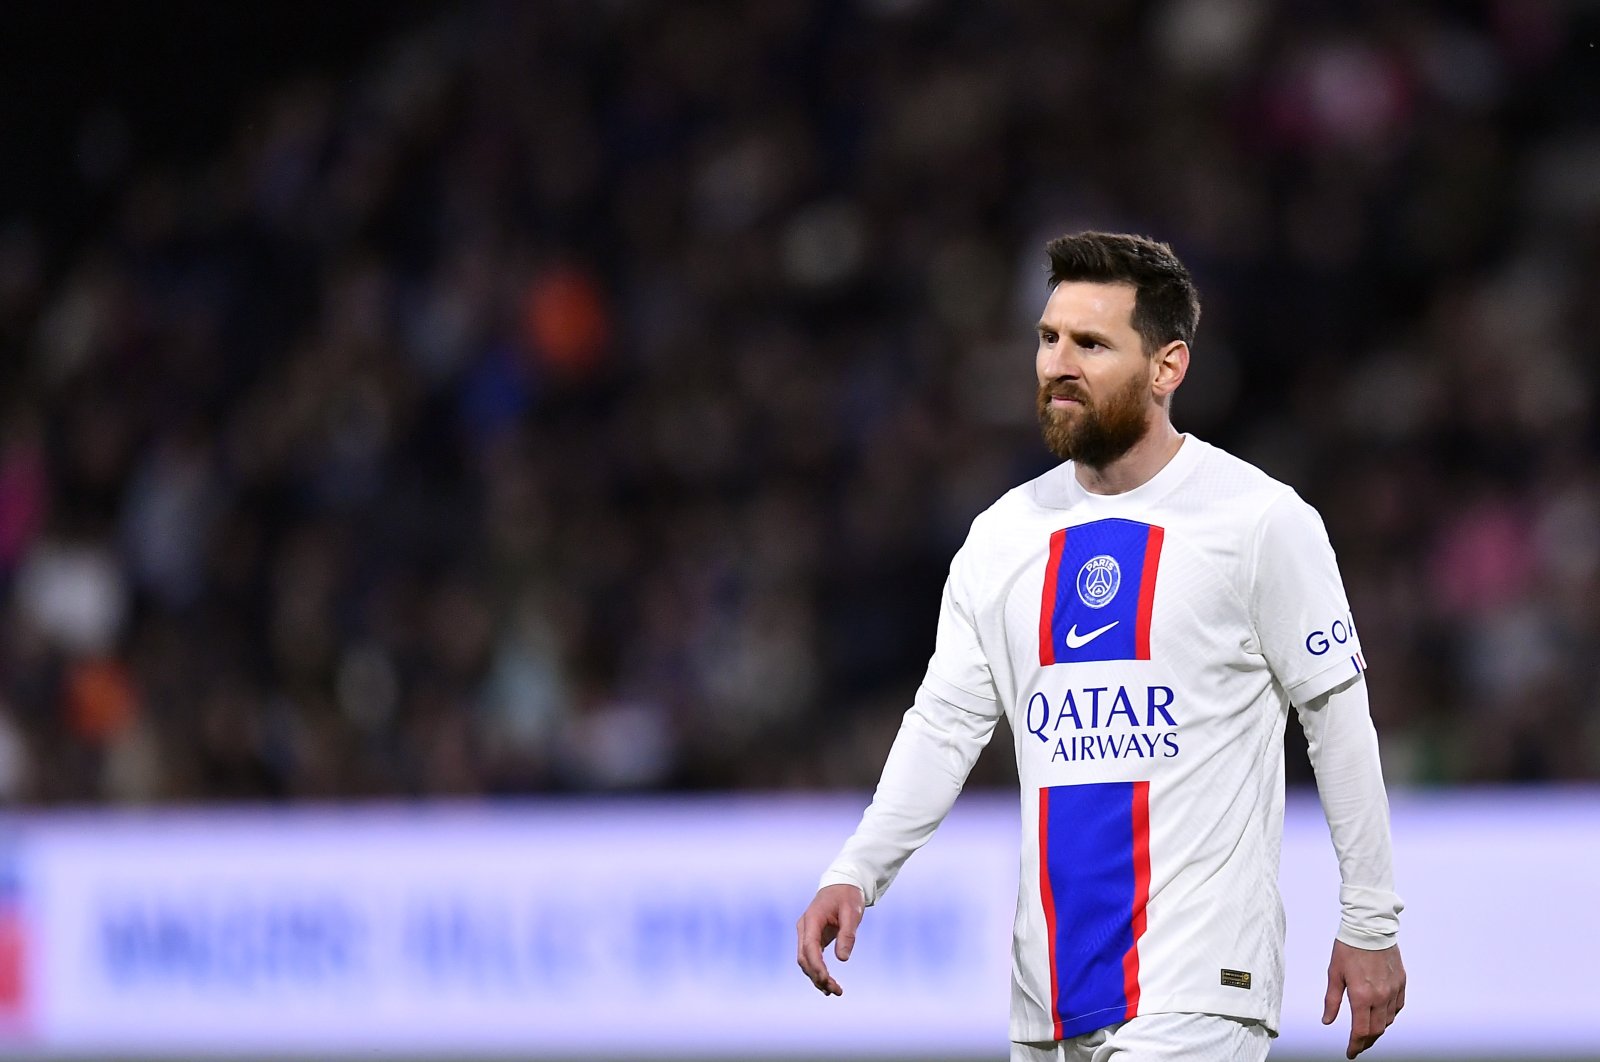 Kesepakatan PSG diragukan karena Messi absen untuk perjalanan Saudi yang tidak disetujui